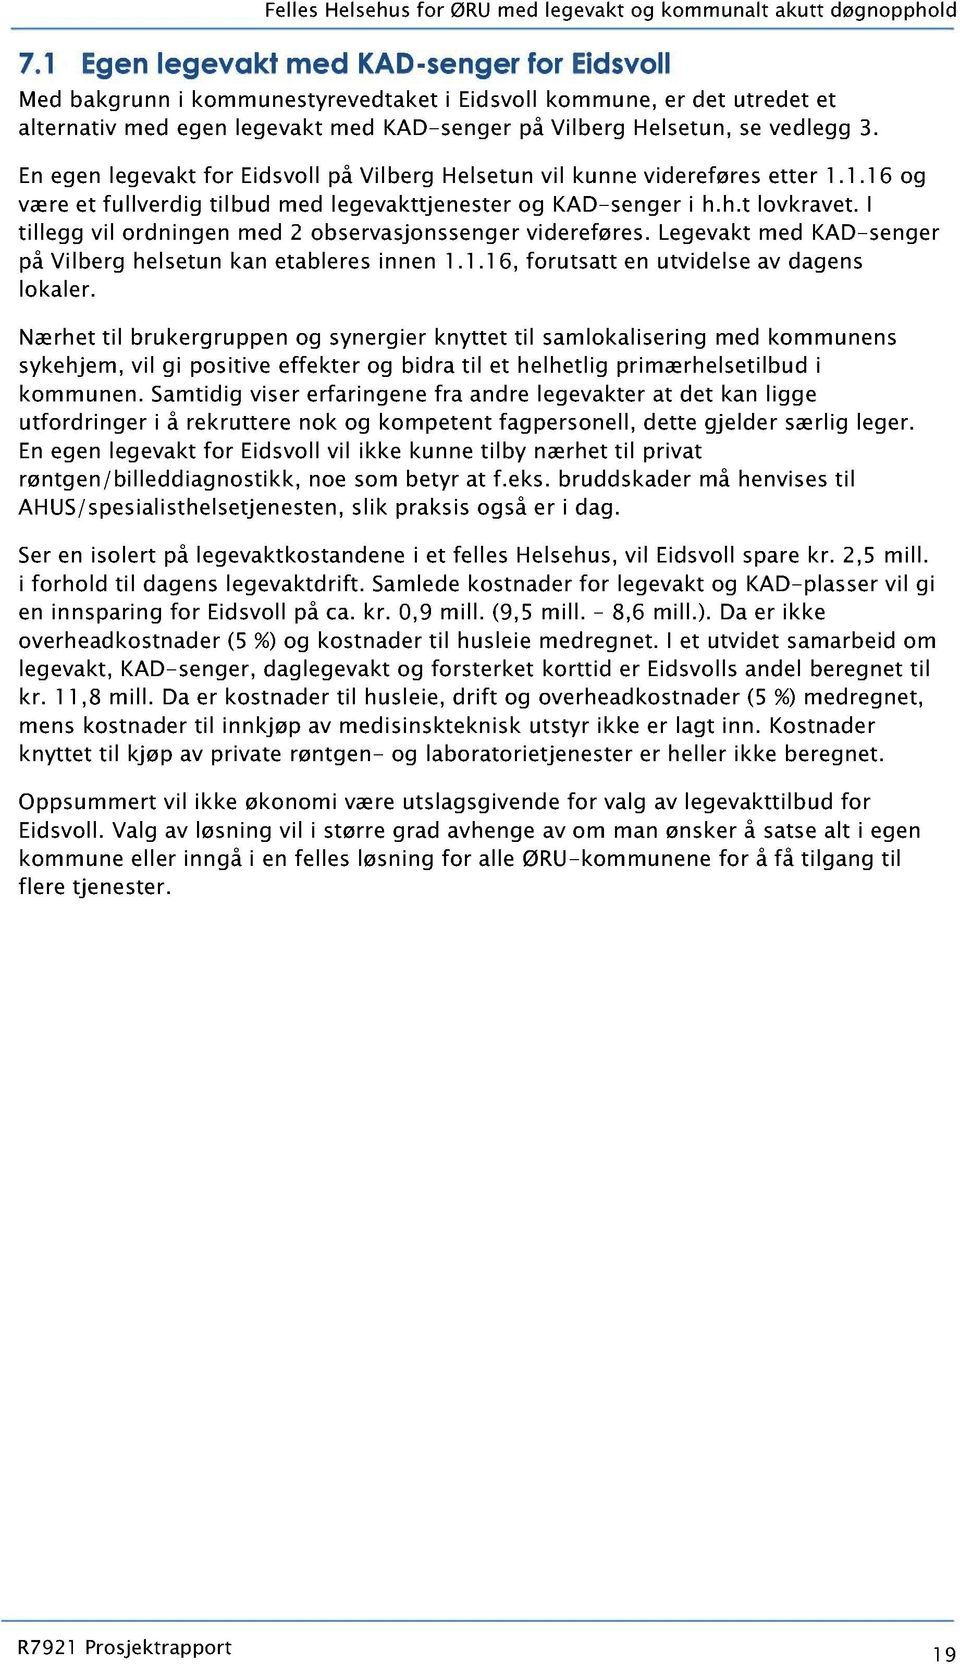 En egen legevakt for Eidsvoll på Vilberg Helsetun vil kunne videreføres etter 1.1.1 6 og være et fullverdig tilbud med legevakttjenester og KAD-senger i h.h.t lovkravet.